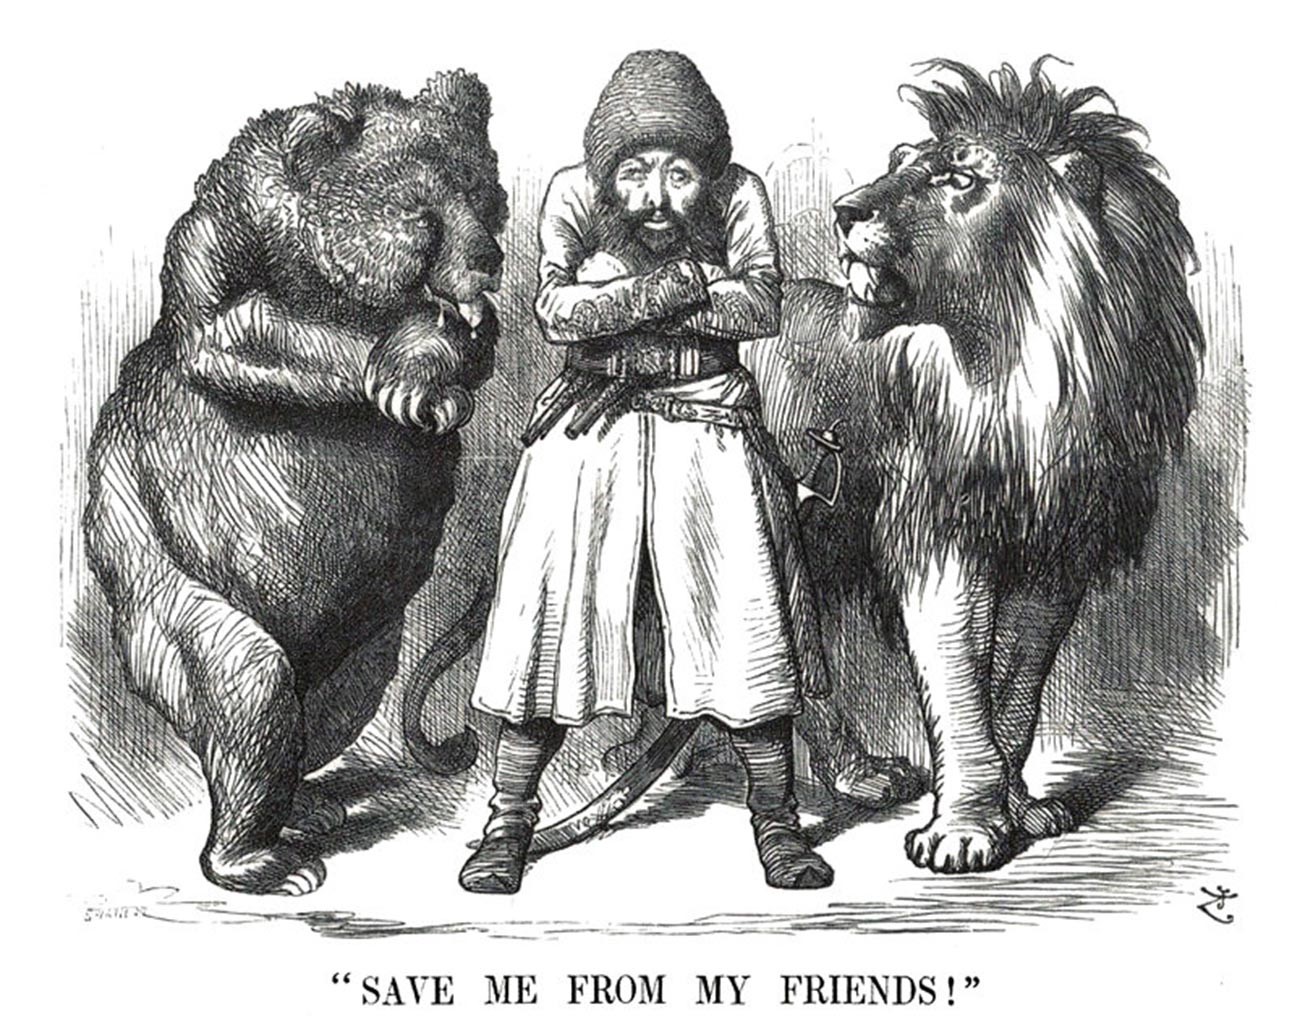 «Спасите меня от моих друзей». Карикатура времен Большой игры. Афганский эмир Шер Али между Россией (медведь) и Англией (лев).